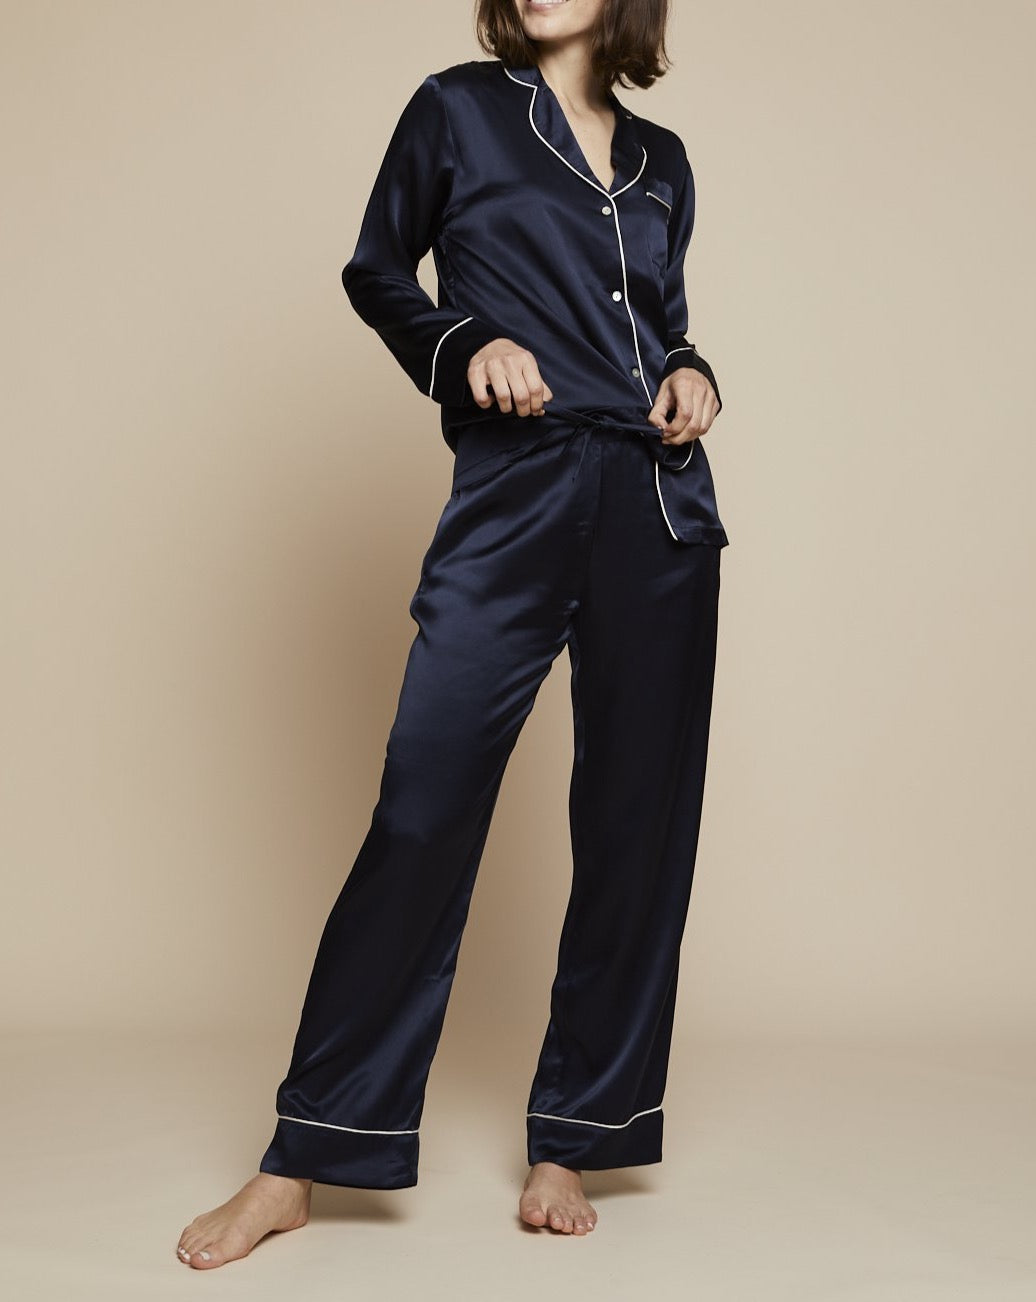 Elisabetha in Fullmoon Sky - Top Loungewear, Pyjama, Silk Pyjama, Nightwear | RADICE